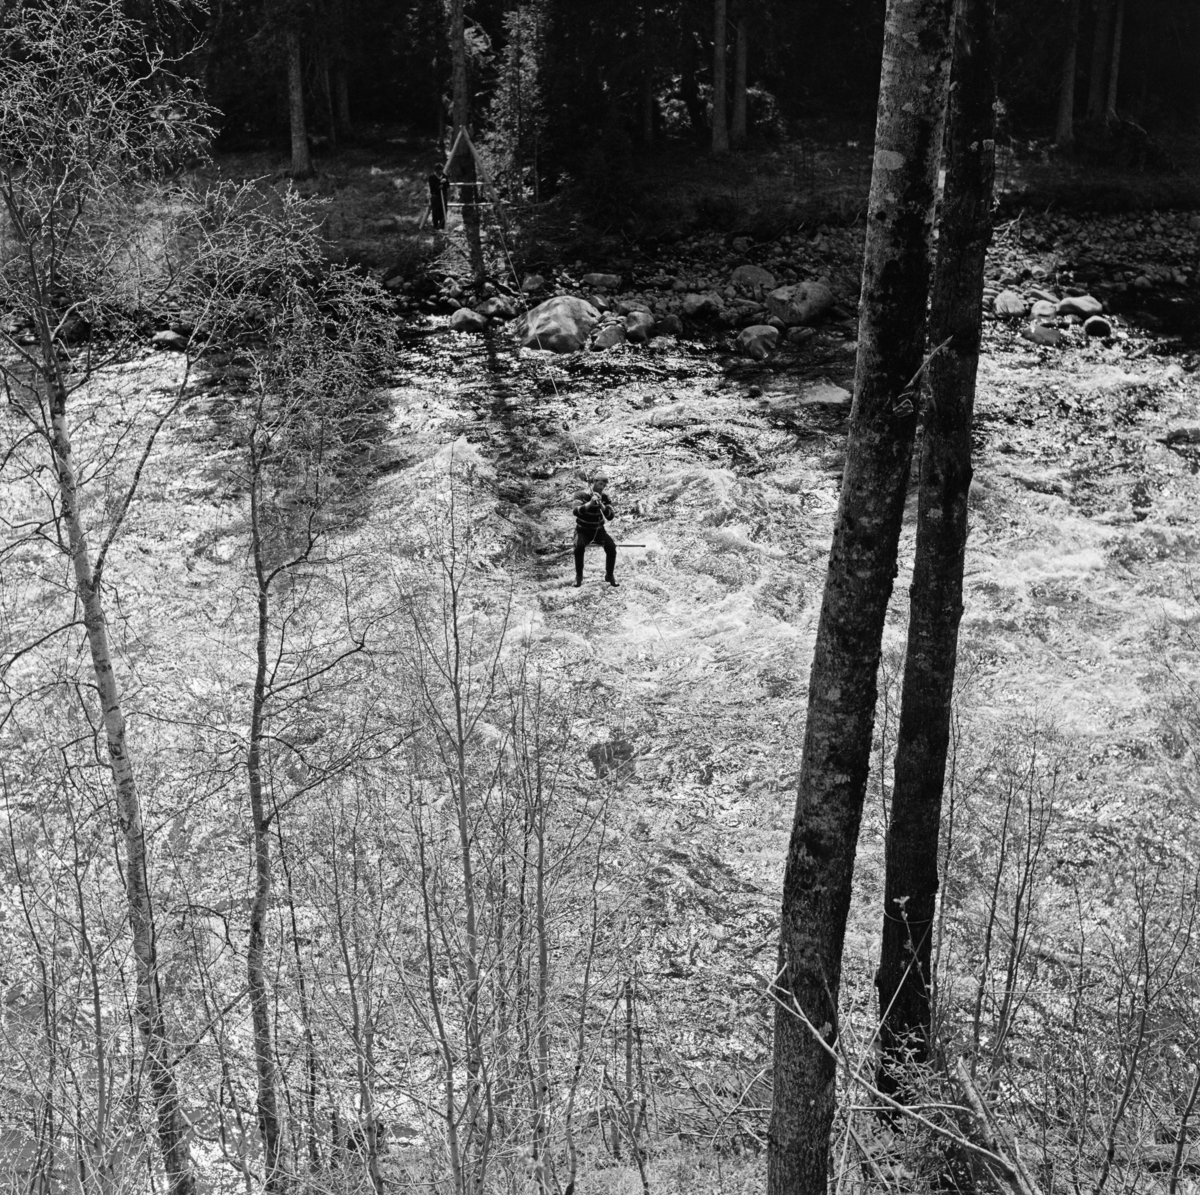 Fra fløtinga i den flomstore elva Åsta i Hedmark i mai 1969.  I forgrunnen ser vi to kraftige furutrær og en del krattskog ved bredden av et vannspeil med kraftige strømhvirvler.  Mellom de to trestammene skimter vi en mannsskikkelse, en tømmerfløter, som var i ferd med å krysse elveløpet på en såkalt fløterstol.  Den besto av ei U-formet jernramme med trinser i ytterendene og et sete av tre i botnen, som var montert på en kabel som var spent opp på tvers av elveløpet.  Her kunne fløterne ved å gripe i bærekabelen dra seg fra den ene elvebredden til den andre, og dermed krysse vassdraget for å løsne tømmer som hadde satt seg fast på motsatt side, uavhengig av bruforbindelser.  Dette var en oppfinnelse børsemakeren og landhandleren Eberhard Pedersen Kokkin (1856-1920) var opphavsmannen til.  Han bodde på Smedbakken ved Søndre Åset, ikke langt fra Åstas utløp i Glomma.  Åsta har sine kilder i de østlige fjelltraktene i Øyer (i Oppland fylke). Derfra renner elva sørøstover gjennom de nordre Hedmarksallmenningene før den skjærer østover og renner ut i Glomma i Åmot i Østerdalen. Vi vet ikke eksakt hvor dette fotografiet er tatt, men det er åpenbart fra den nedre delen av vassdraget, altså på Vangs eller Åmots grunn.    

Åsta var fløtbar i om lag tre mils lengde, men fløtinga på den øverste delen av denne strekningen var usikker.  Dessuten var det slik at allmenningene i Ringsaker, Furnes og Vang tok mye av tømmeret til egne sagbruk.  Derfor var den nedre delen av dette vassdraget - fra Djuposet og nedover - at fløtingsaktiviteten var størst.  I 1969 ble det fløtet snaut 4 000 kubikkmeter tømmer i Åsta.  I prioden 1950-1959 var gjennomsnittlig årlig fløtingskvantum i denne elva 4827 kubikkmeter, så fløtingskvantumet i 1969 var ikke illevarslende lavt.  Dette var likevel nest siste sesong med fløting i dette sidevassdraget.